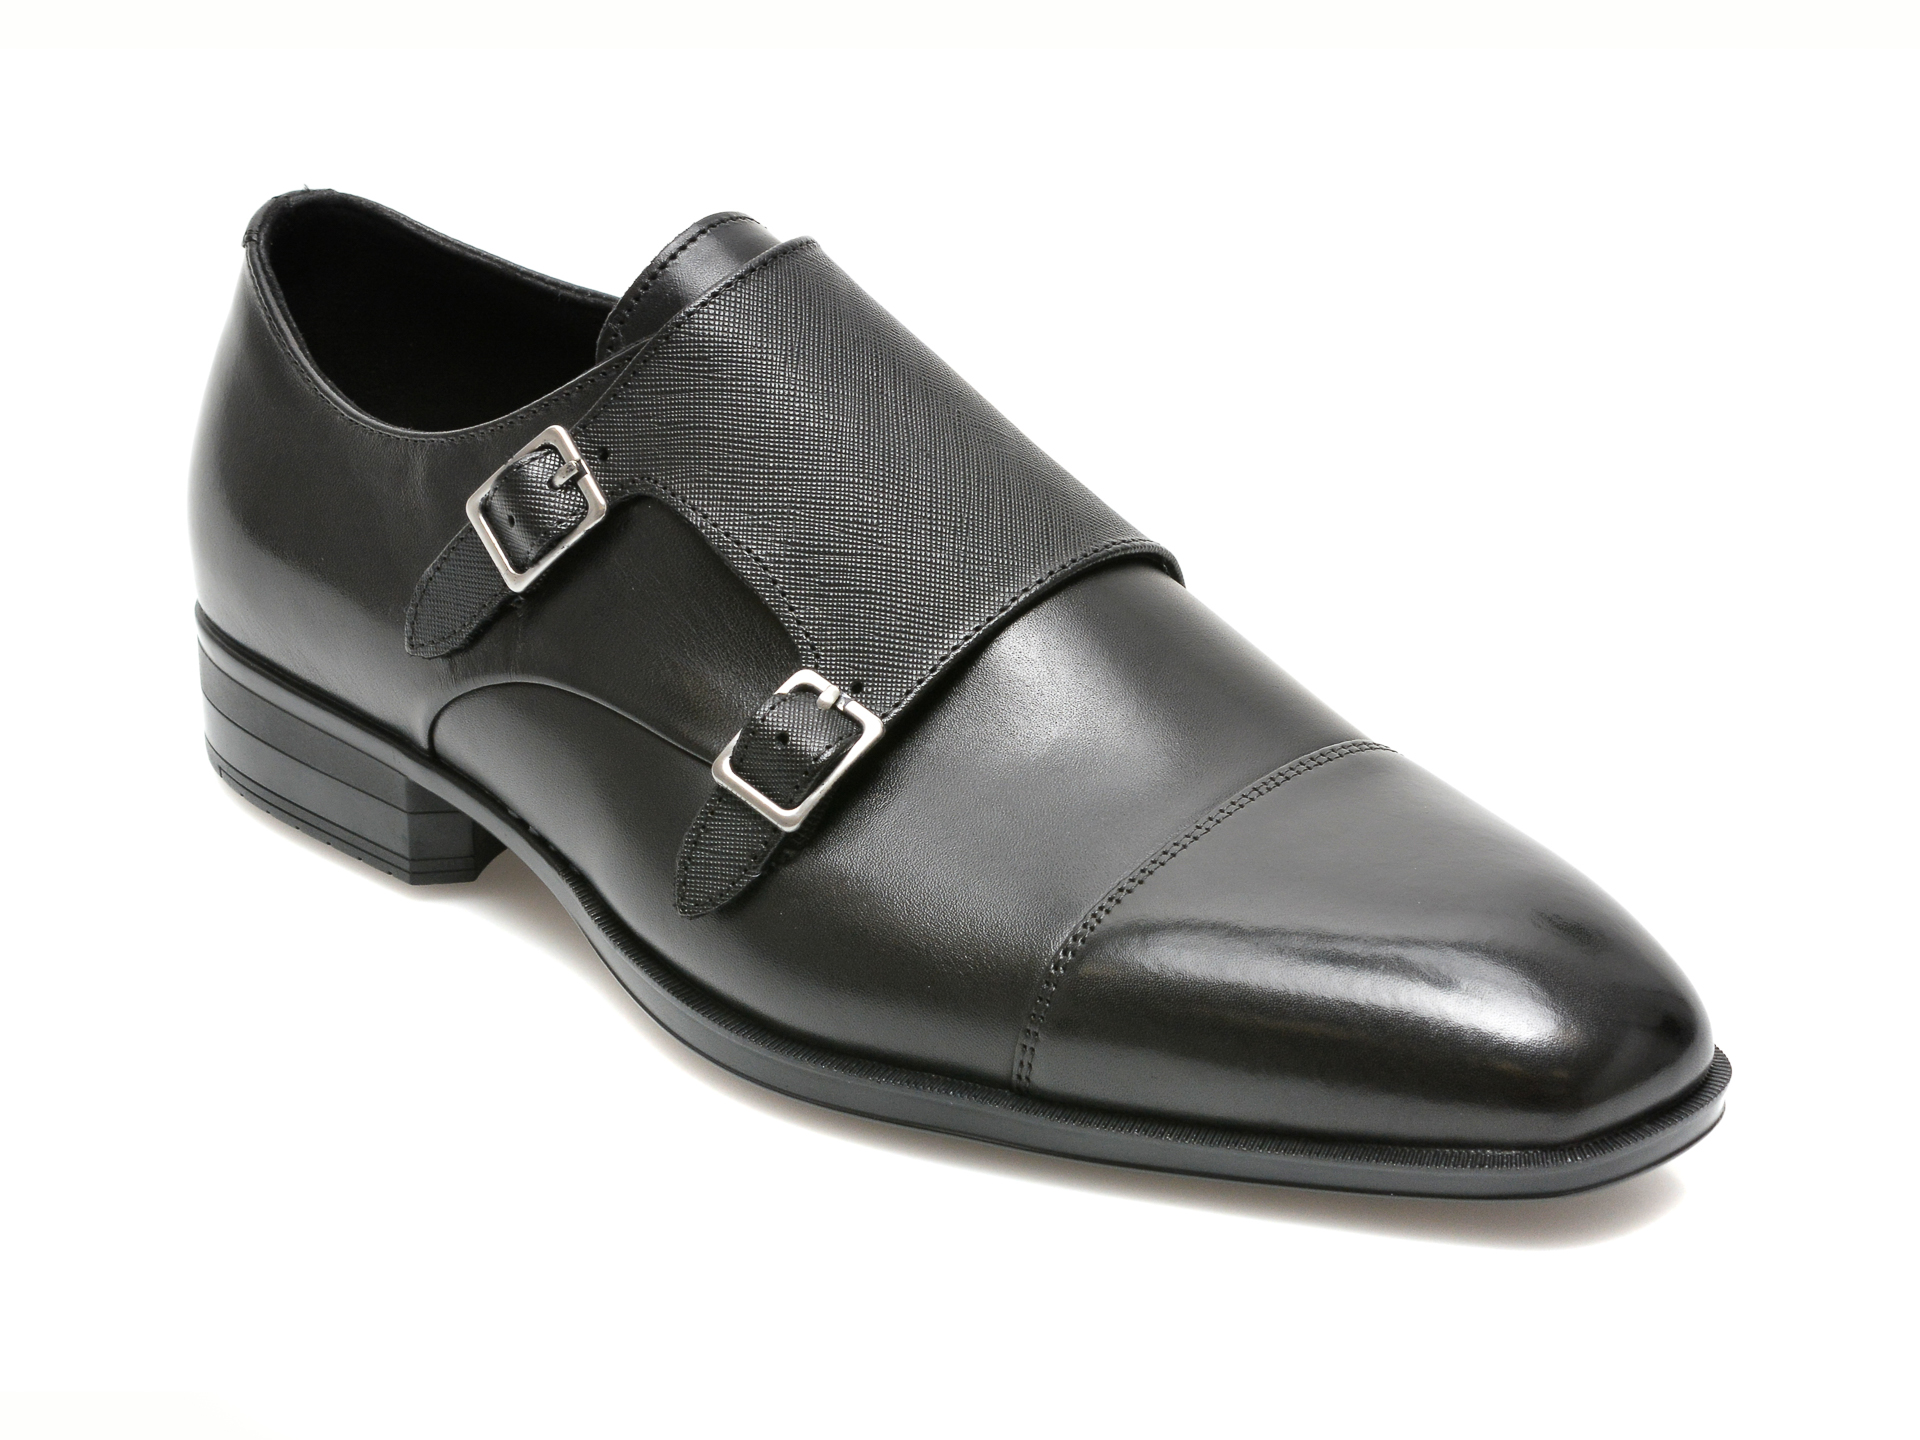 Pantofi ALDO negri, TREMANOR001, din piele naturala Aldo Aldo